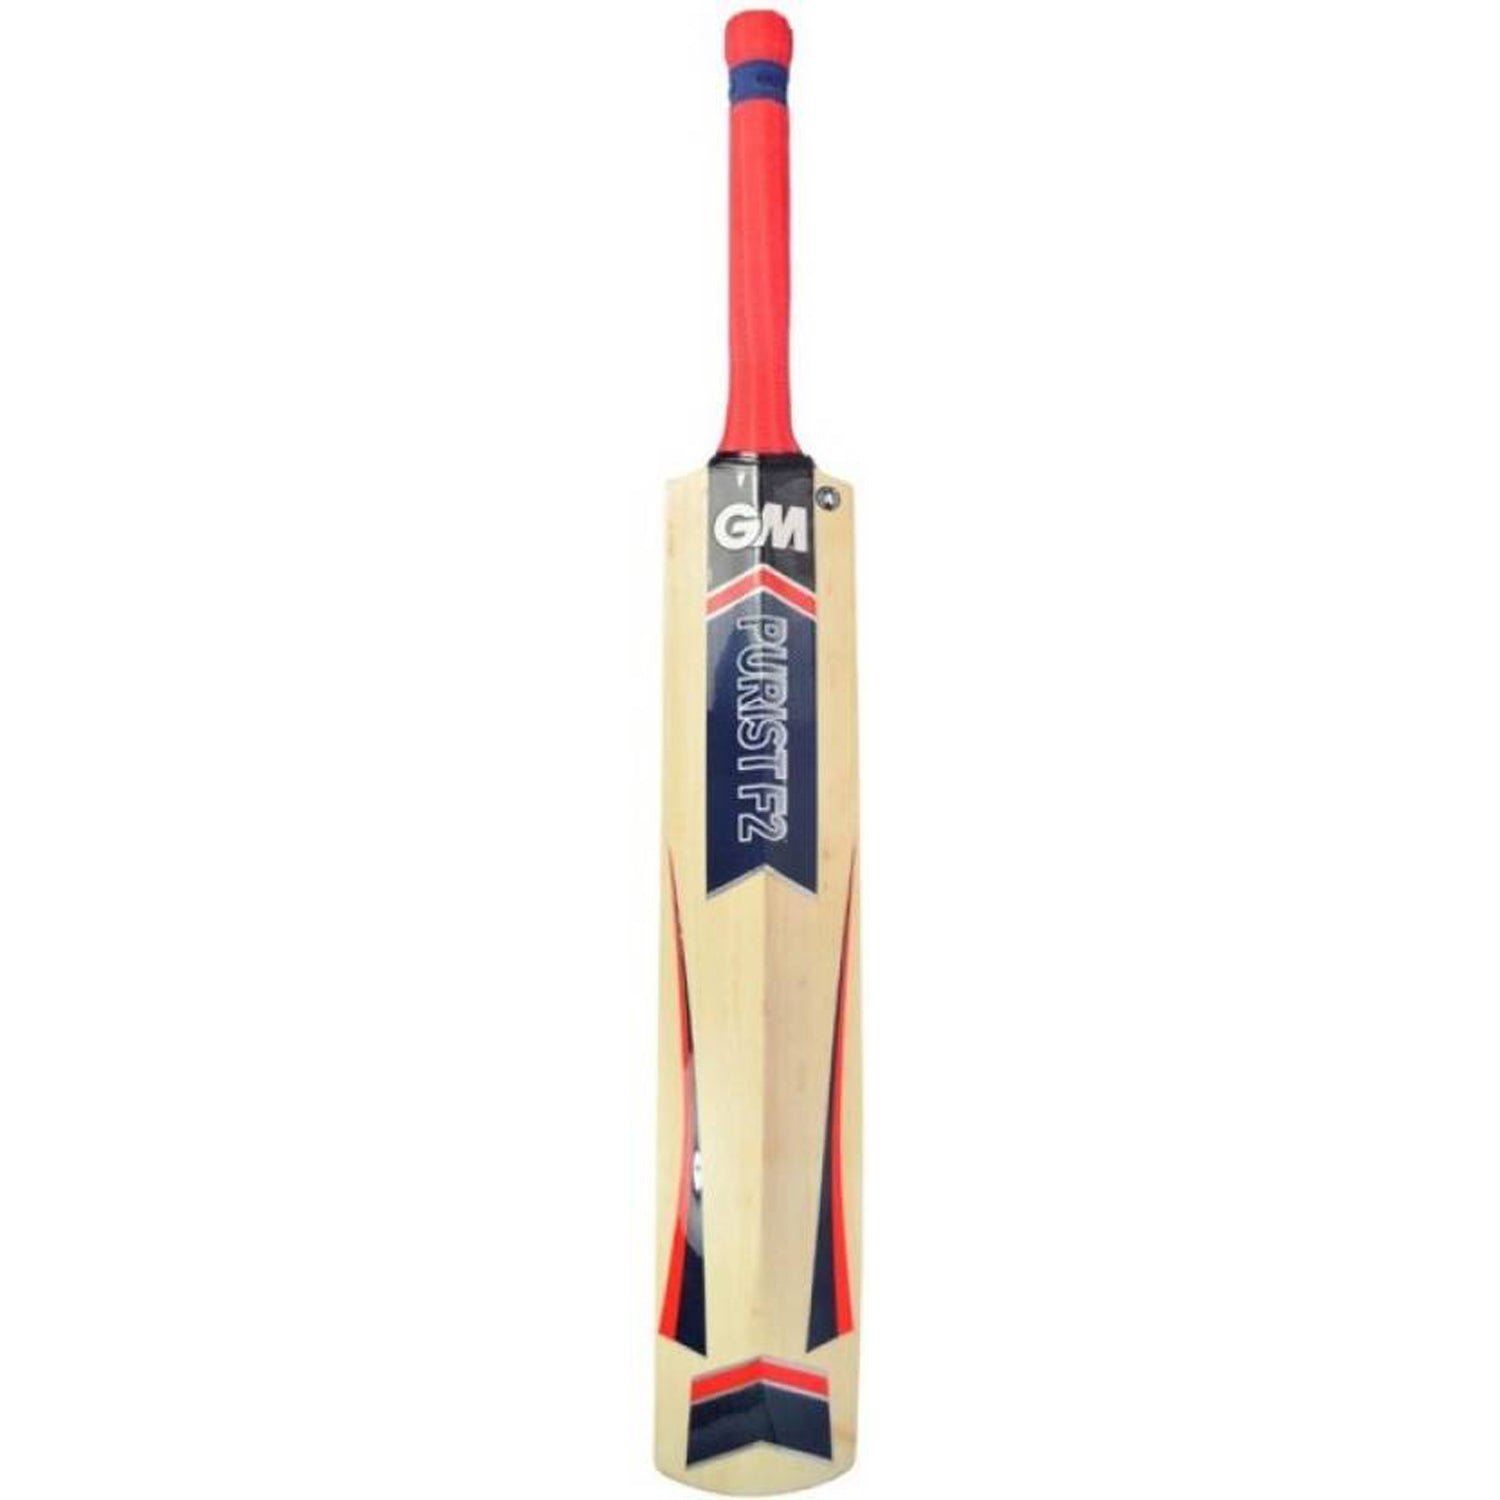 GM Purist F2 Maestro Kashmir Willow Cricket Bat - Best Price online Prokicksports.com